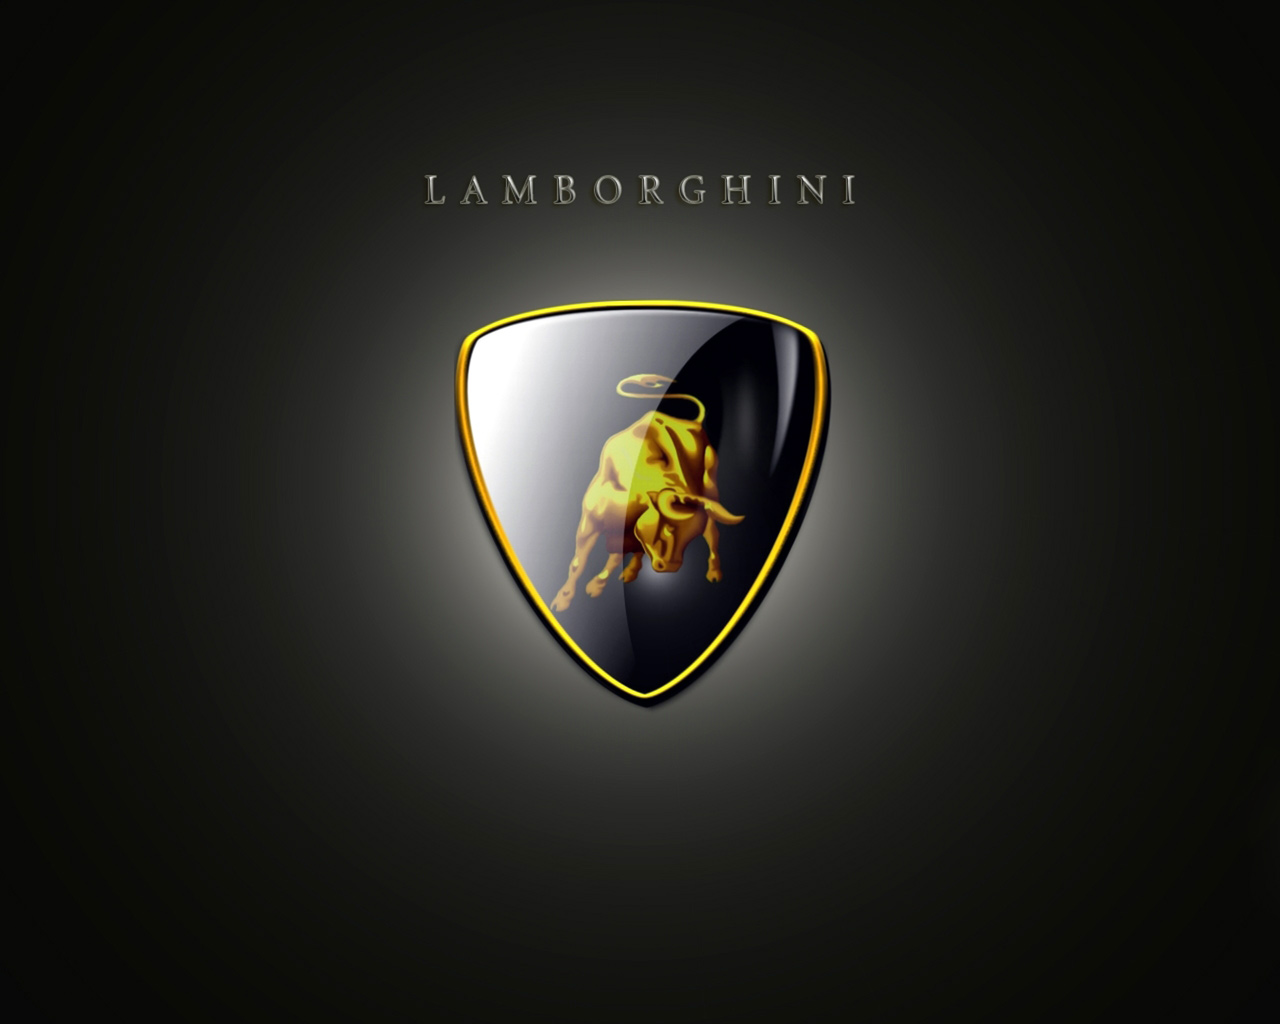 Lamborghini Emblem - HD Wallpapers